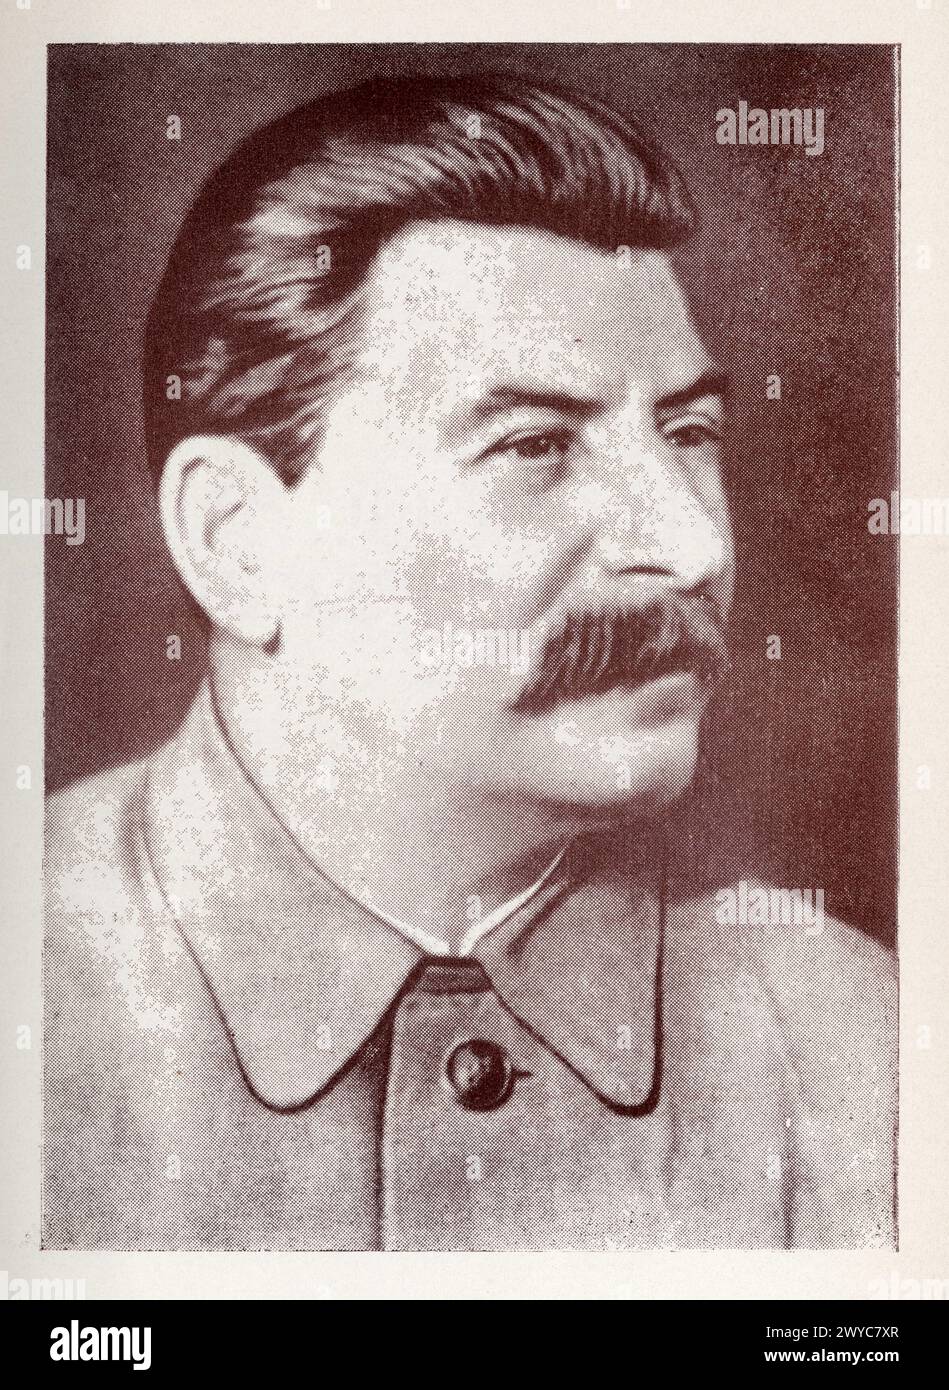 Joseph Staline, né le 18 décembre 1878 à Gori et mort le 5 Mars 1953 à Moscou, est un révolutionnaire bolchevik et homme d'État soviétique d'origine g Foto Stock